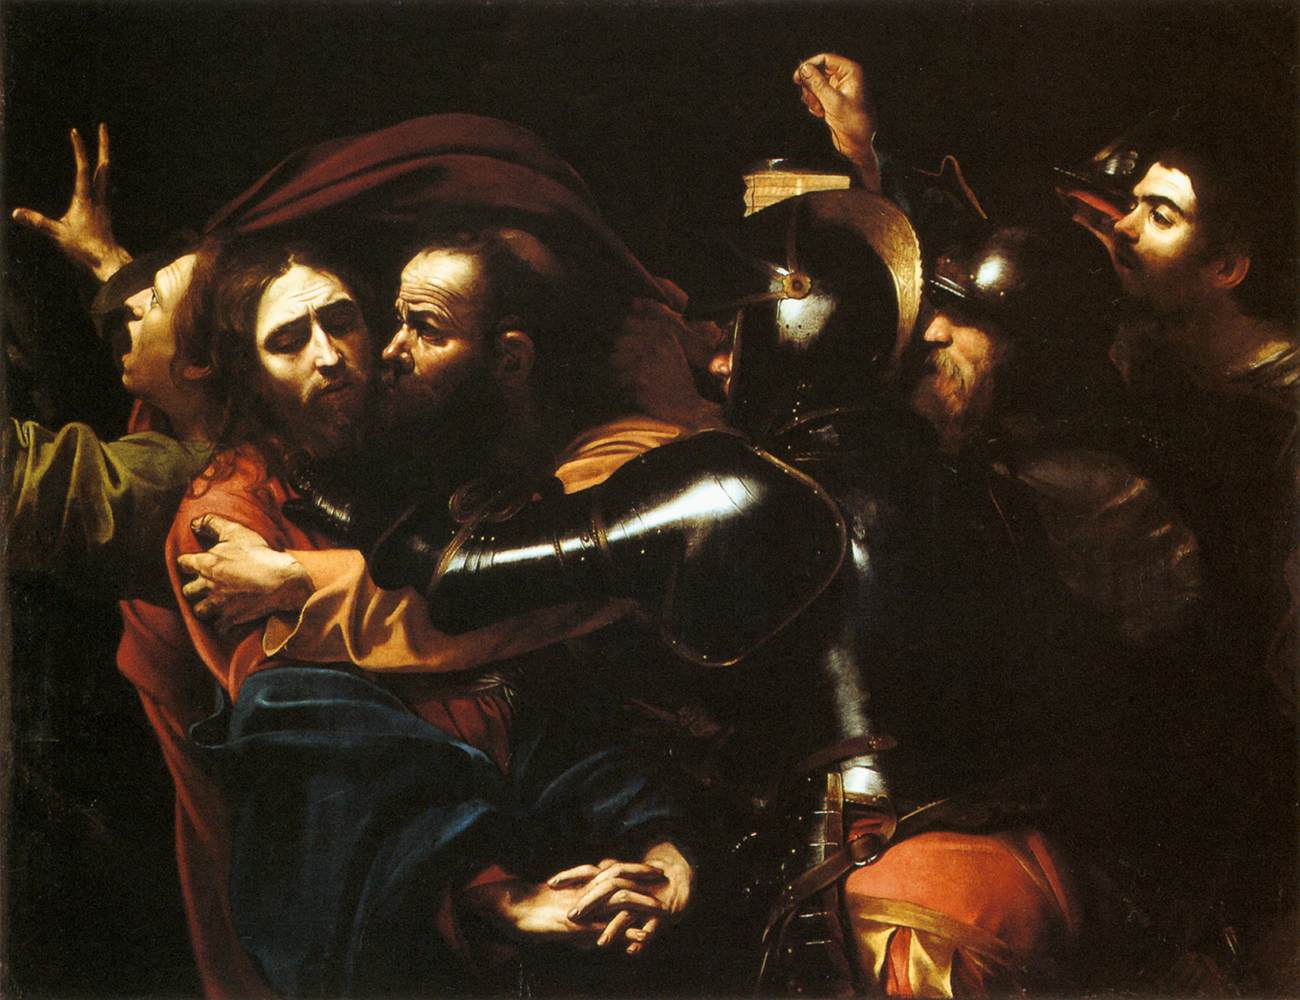 L’arrestation du Christ by  Le Caravage - 1602 - 133.5 cm × 169.5 cm 